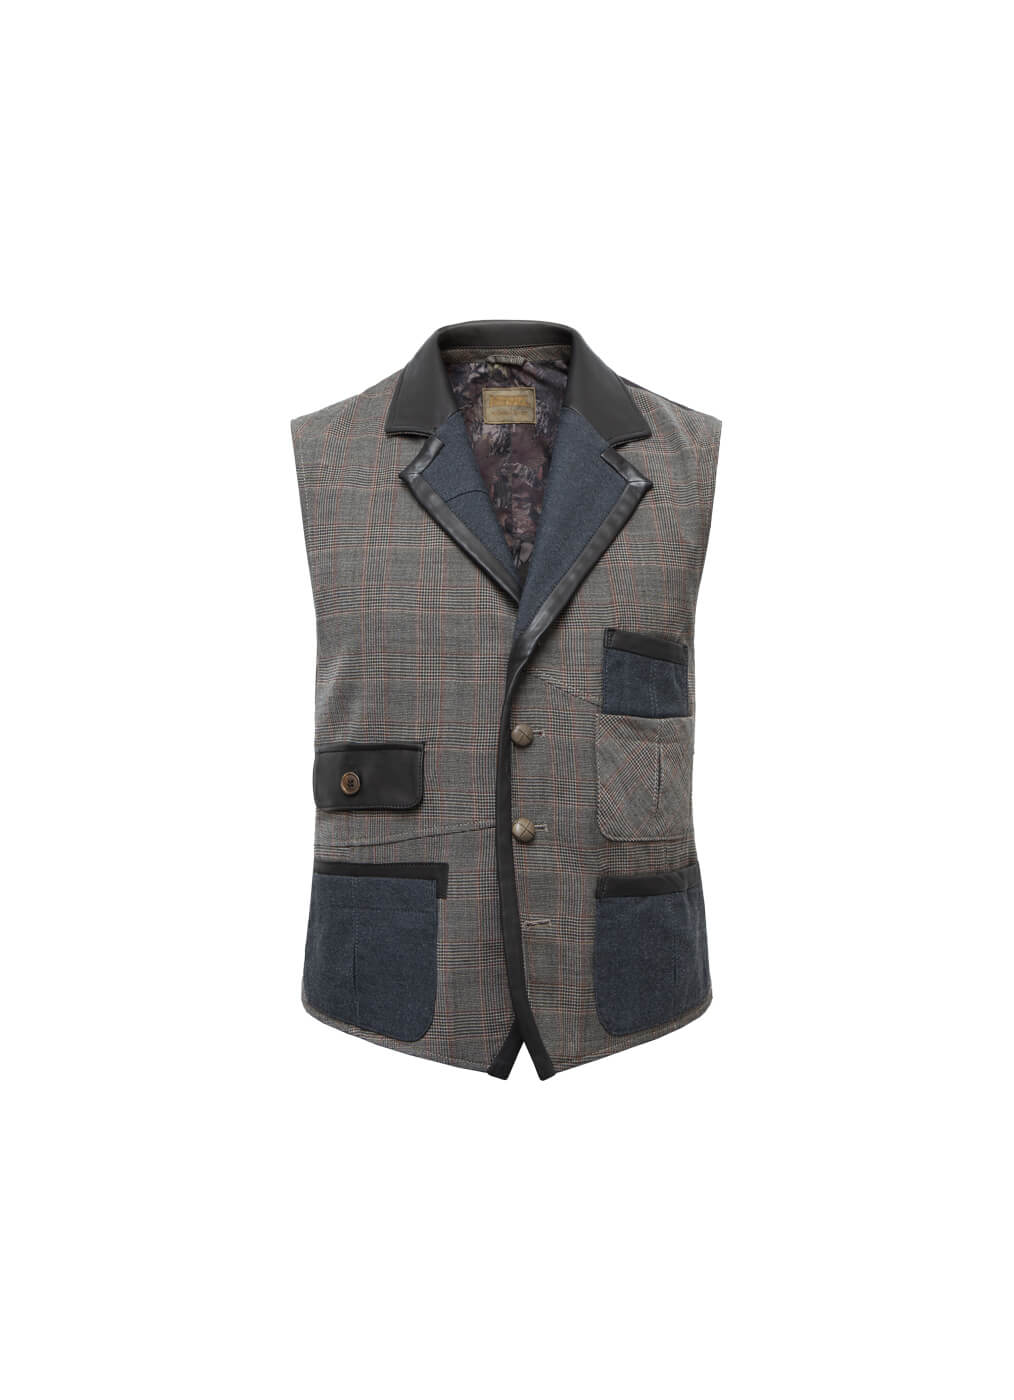 Fabric Vest Men “Max Phersons”, squared brown bordeaux